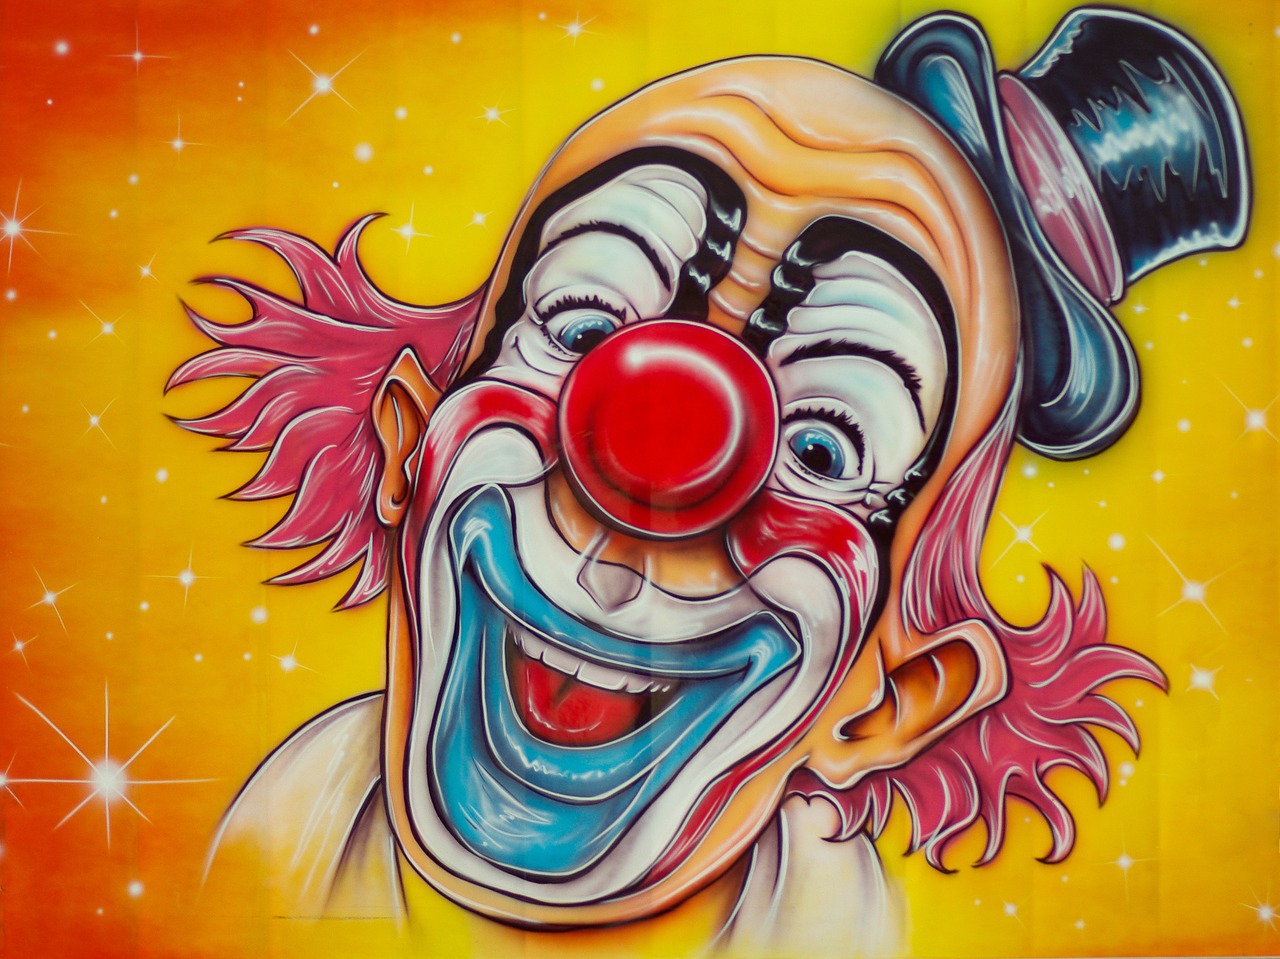 circus clown disguise free photo